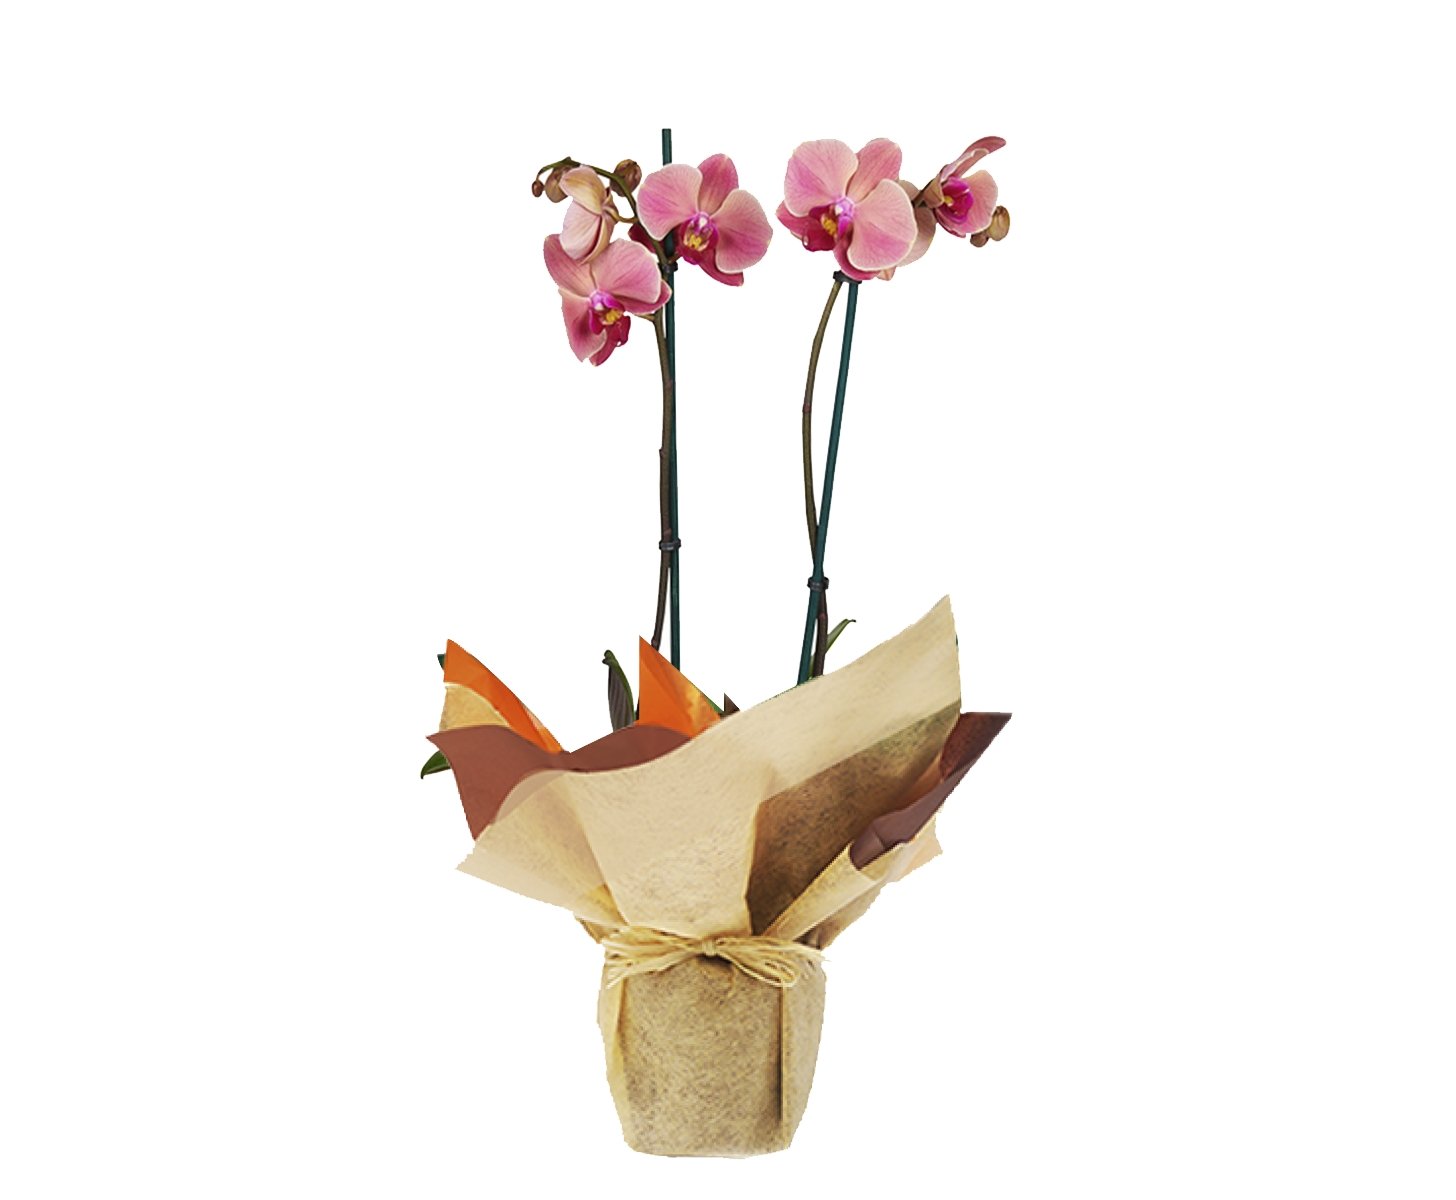 Plano entero de orquídea rosada empacada en papel de regalo